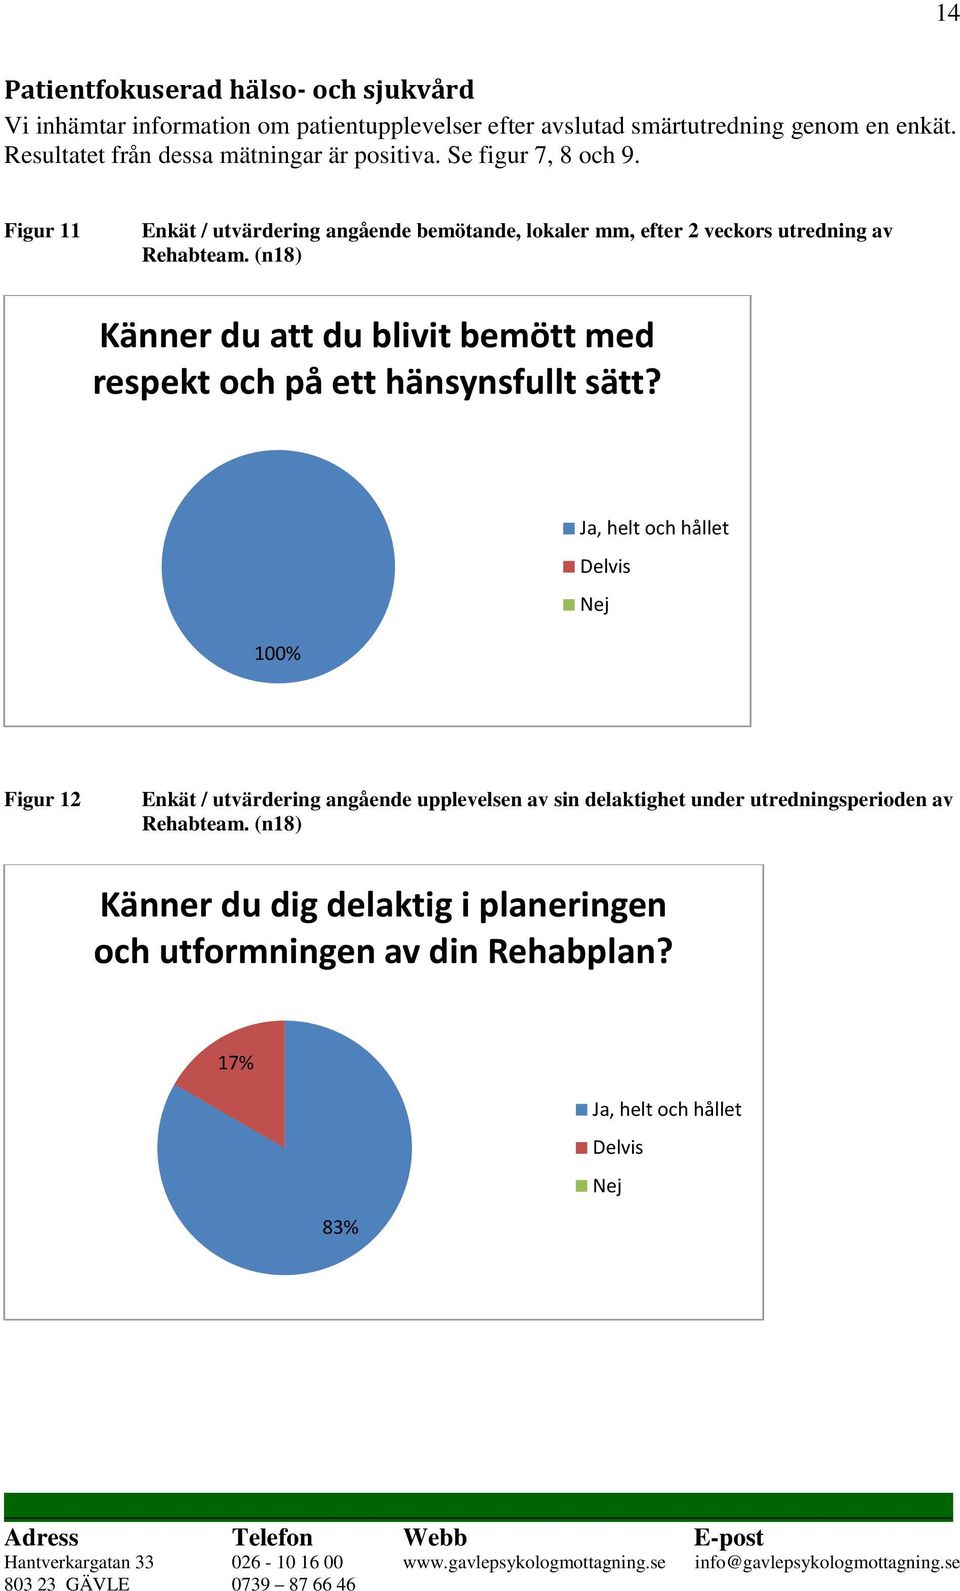 Figur 11 Enkät / utvärdering angående bemötande, lokaler mm, efter 2 veckors utredning av Rehabteam.